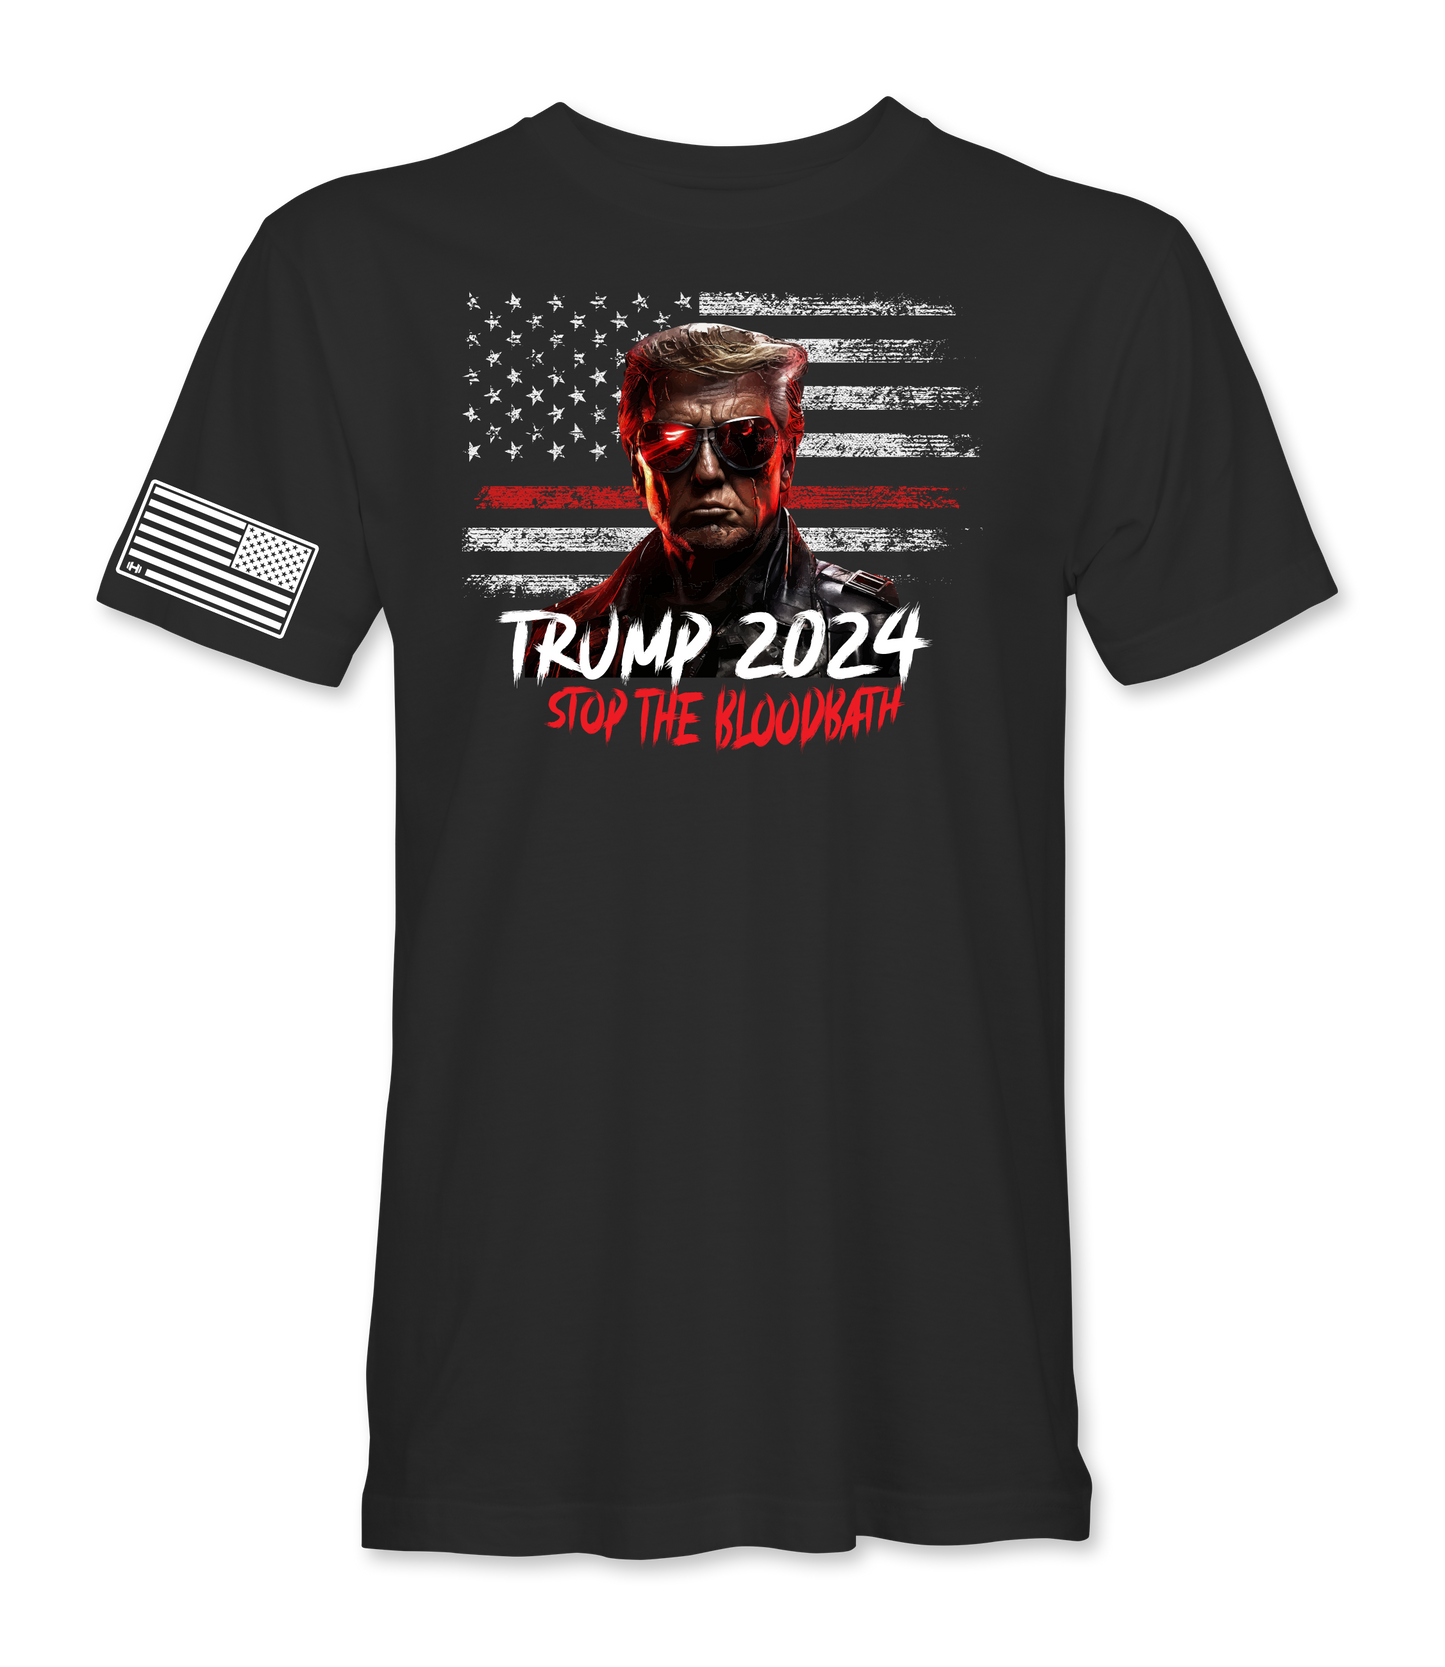 Trump Terminator Bloodbath T-Shirt